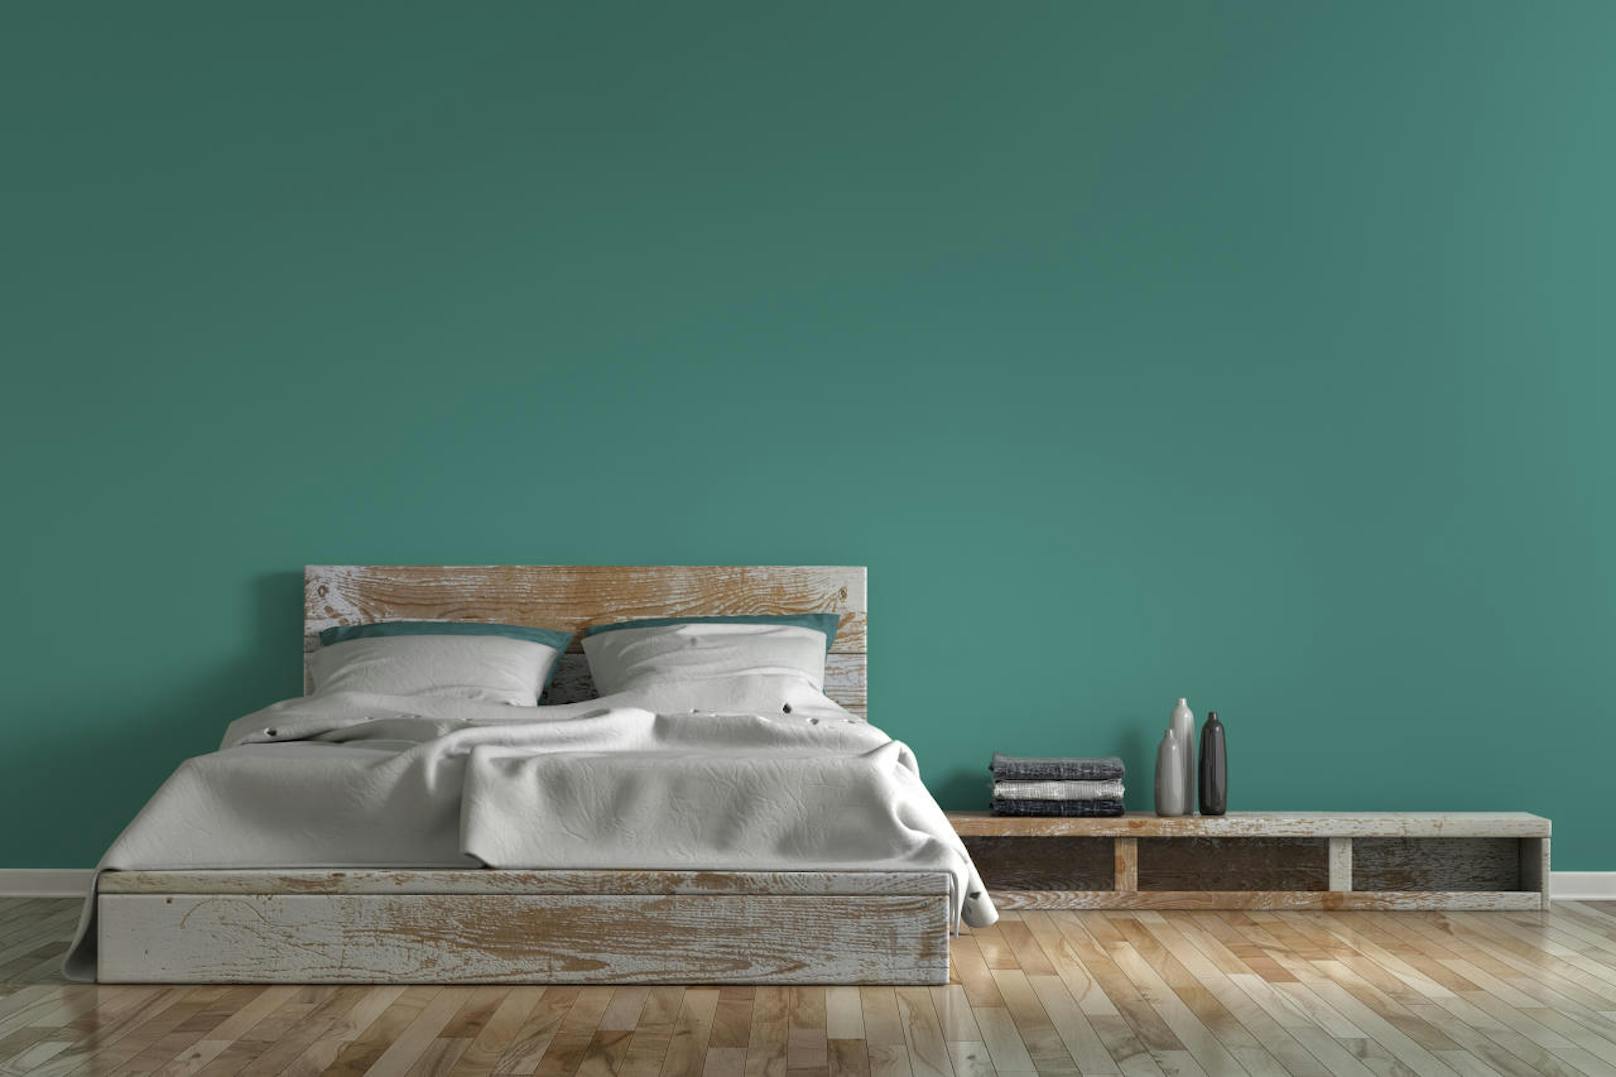 Je nach Farbton kann Grün wärmer oder kälter wirken und verleiht einem Raum so eine andere Ausstrahlung.